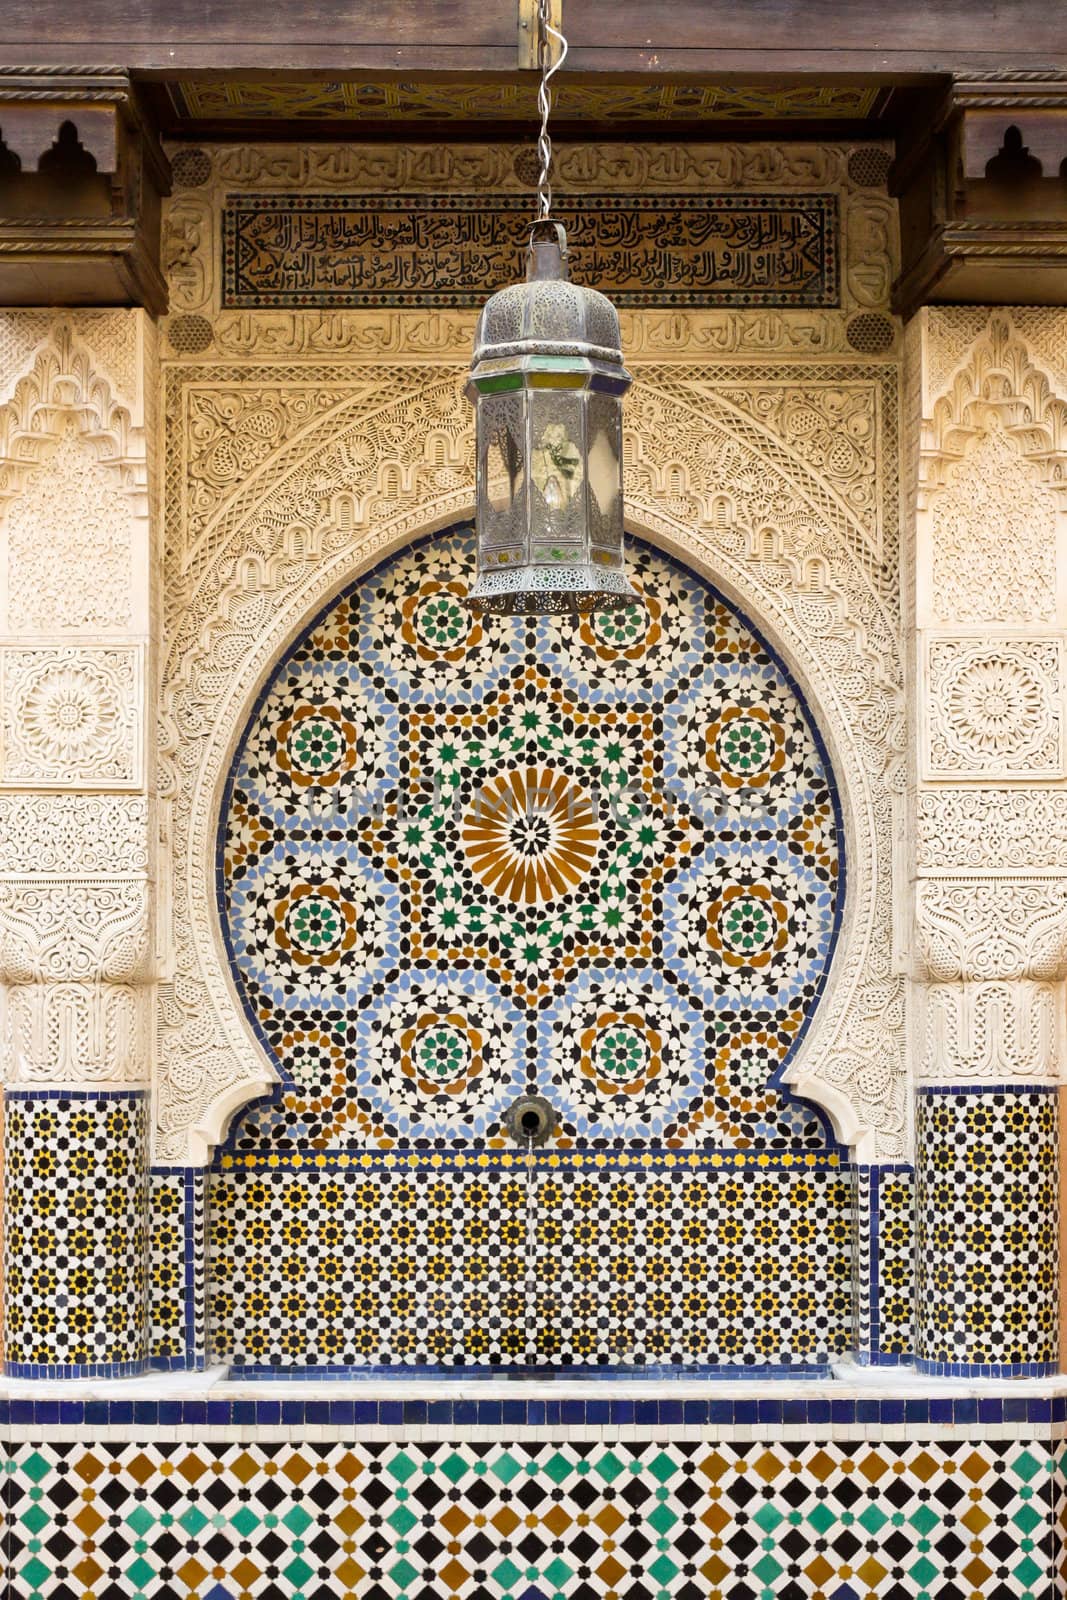 Moroccan fountain by trgowanlock